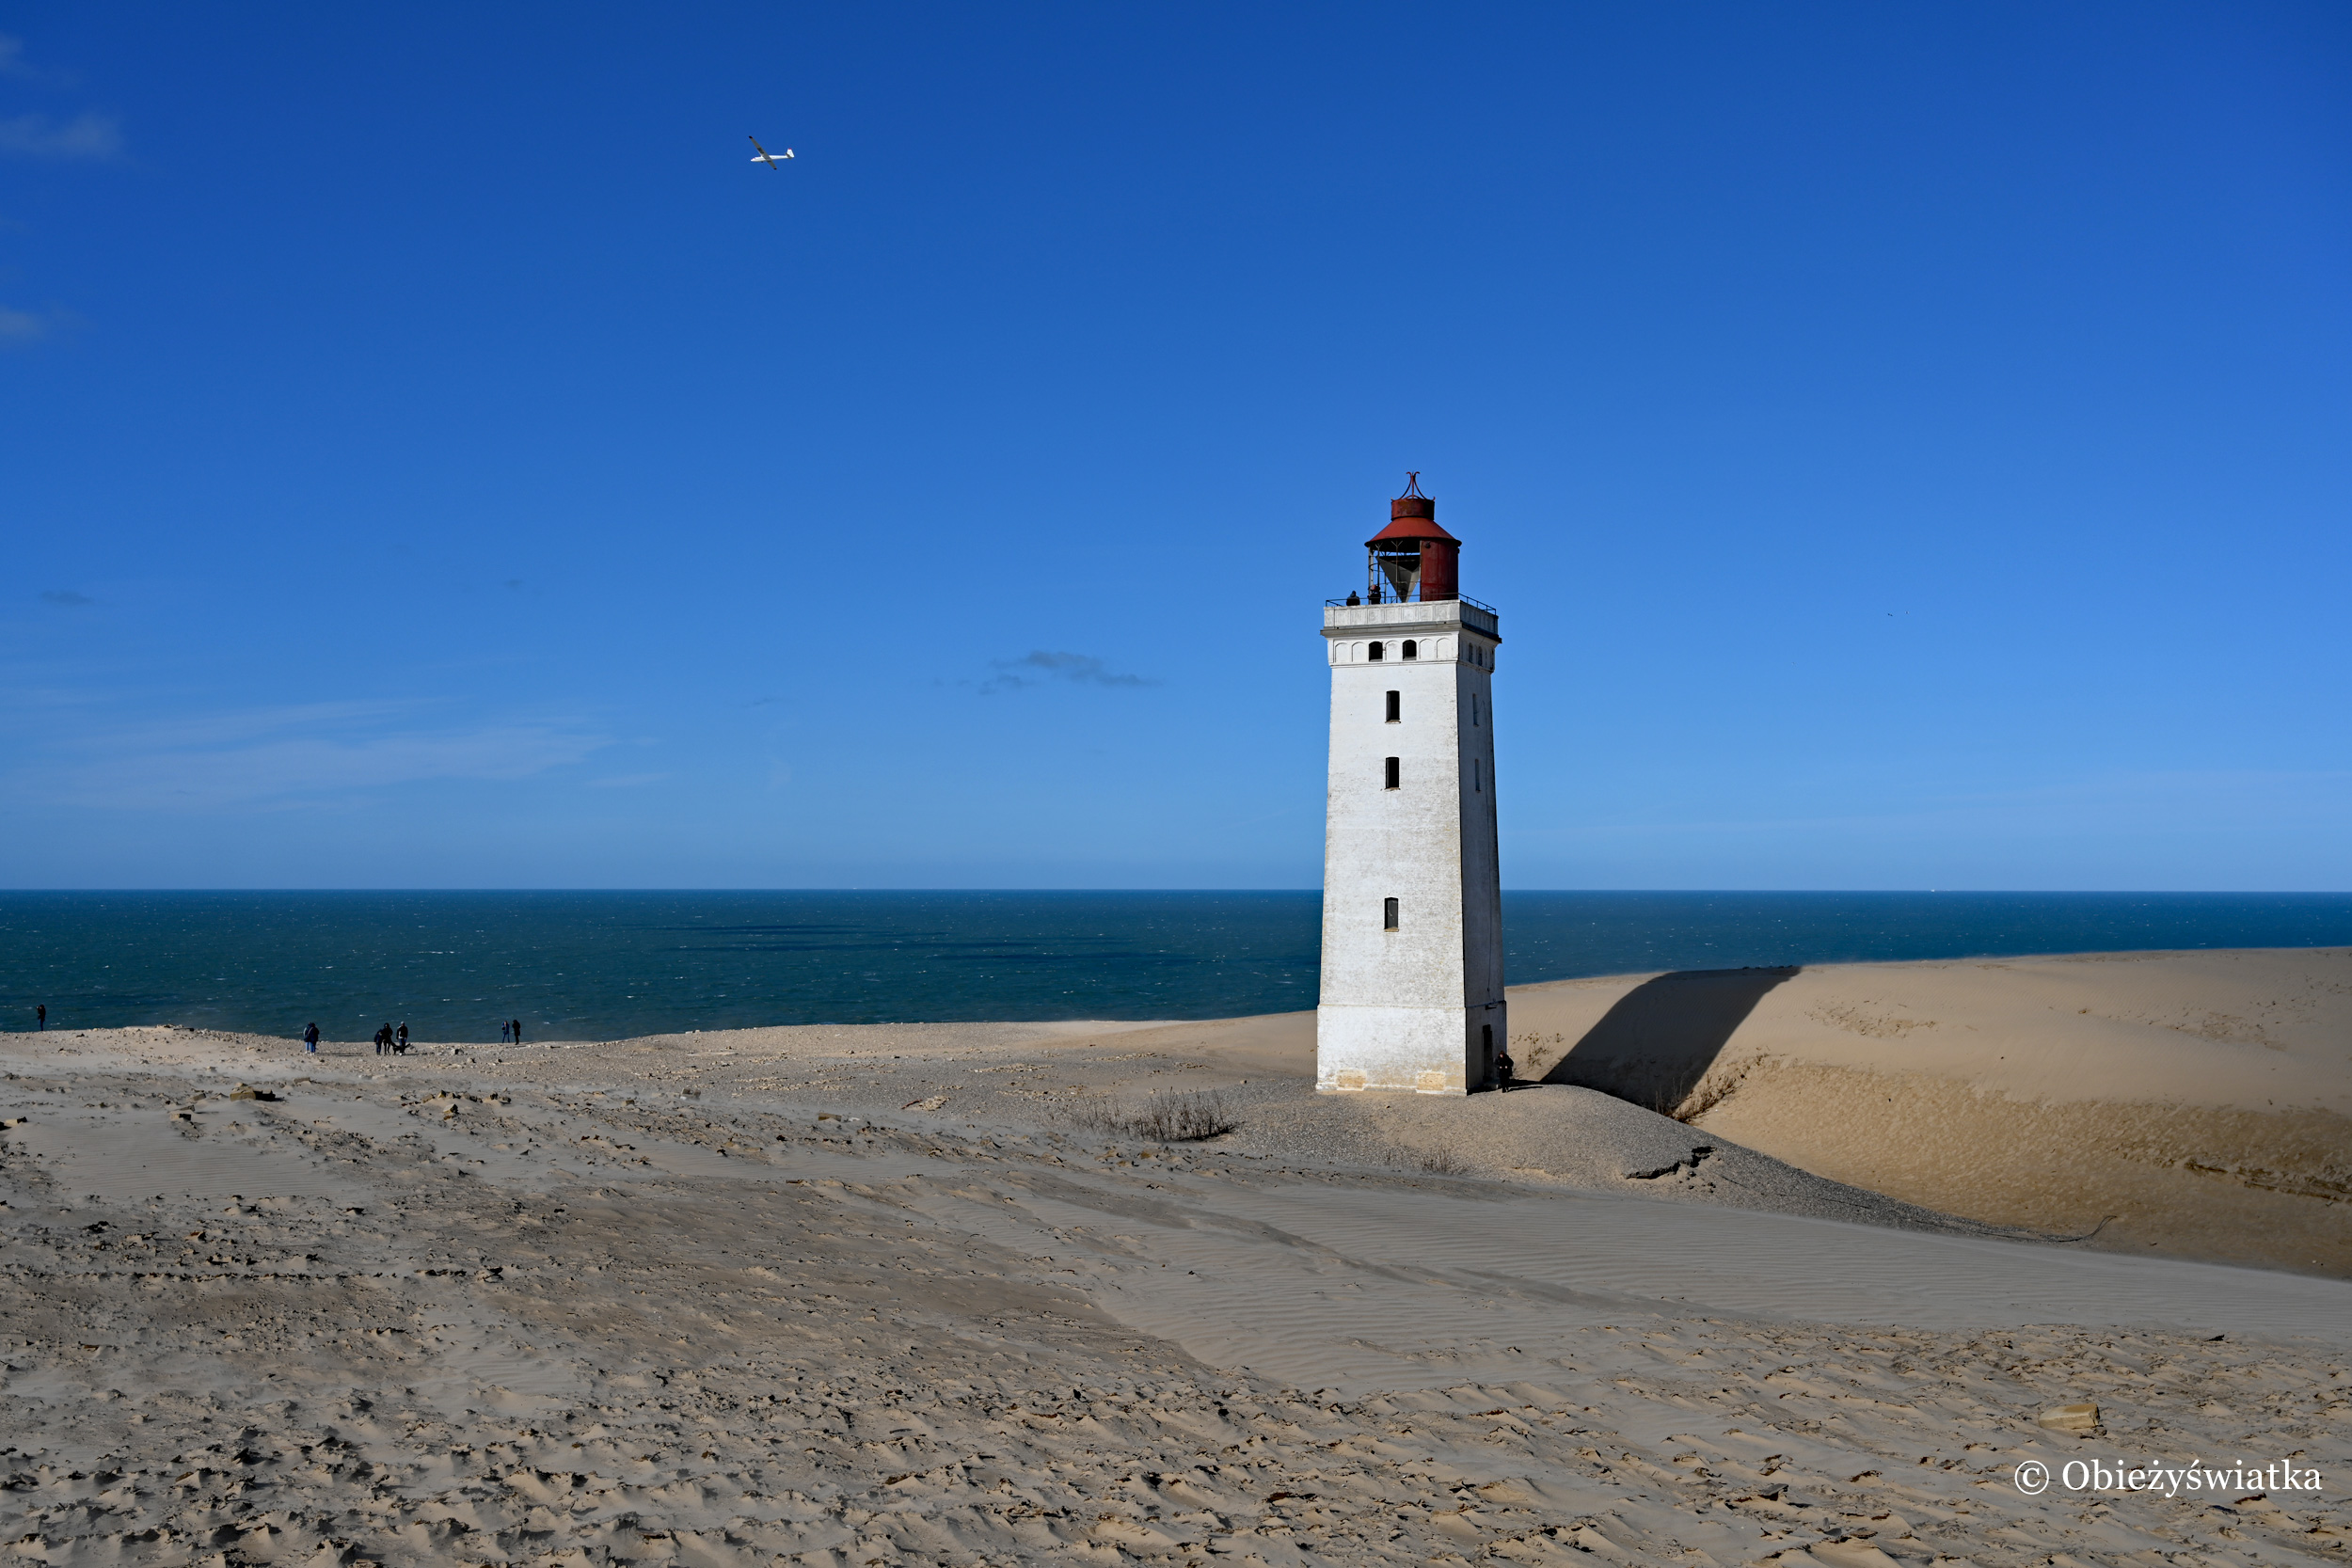 Ciemne morze, błękitne niebo, wydmy i biała latarnia...., Rubjerg Knude, Dania